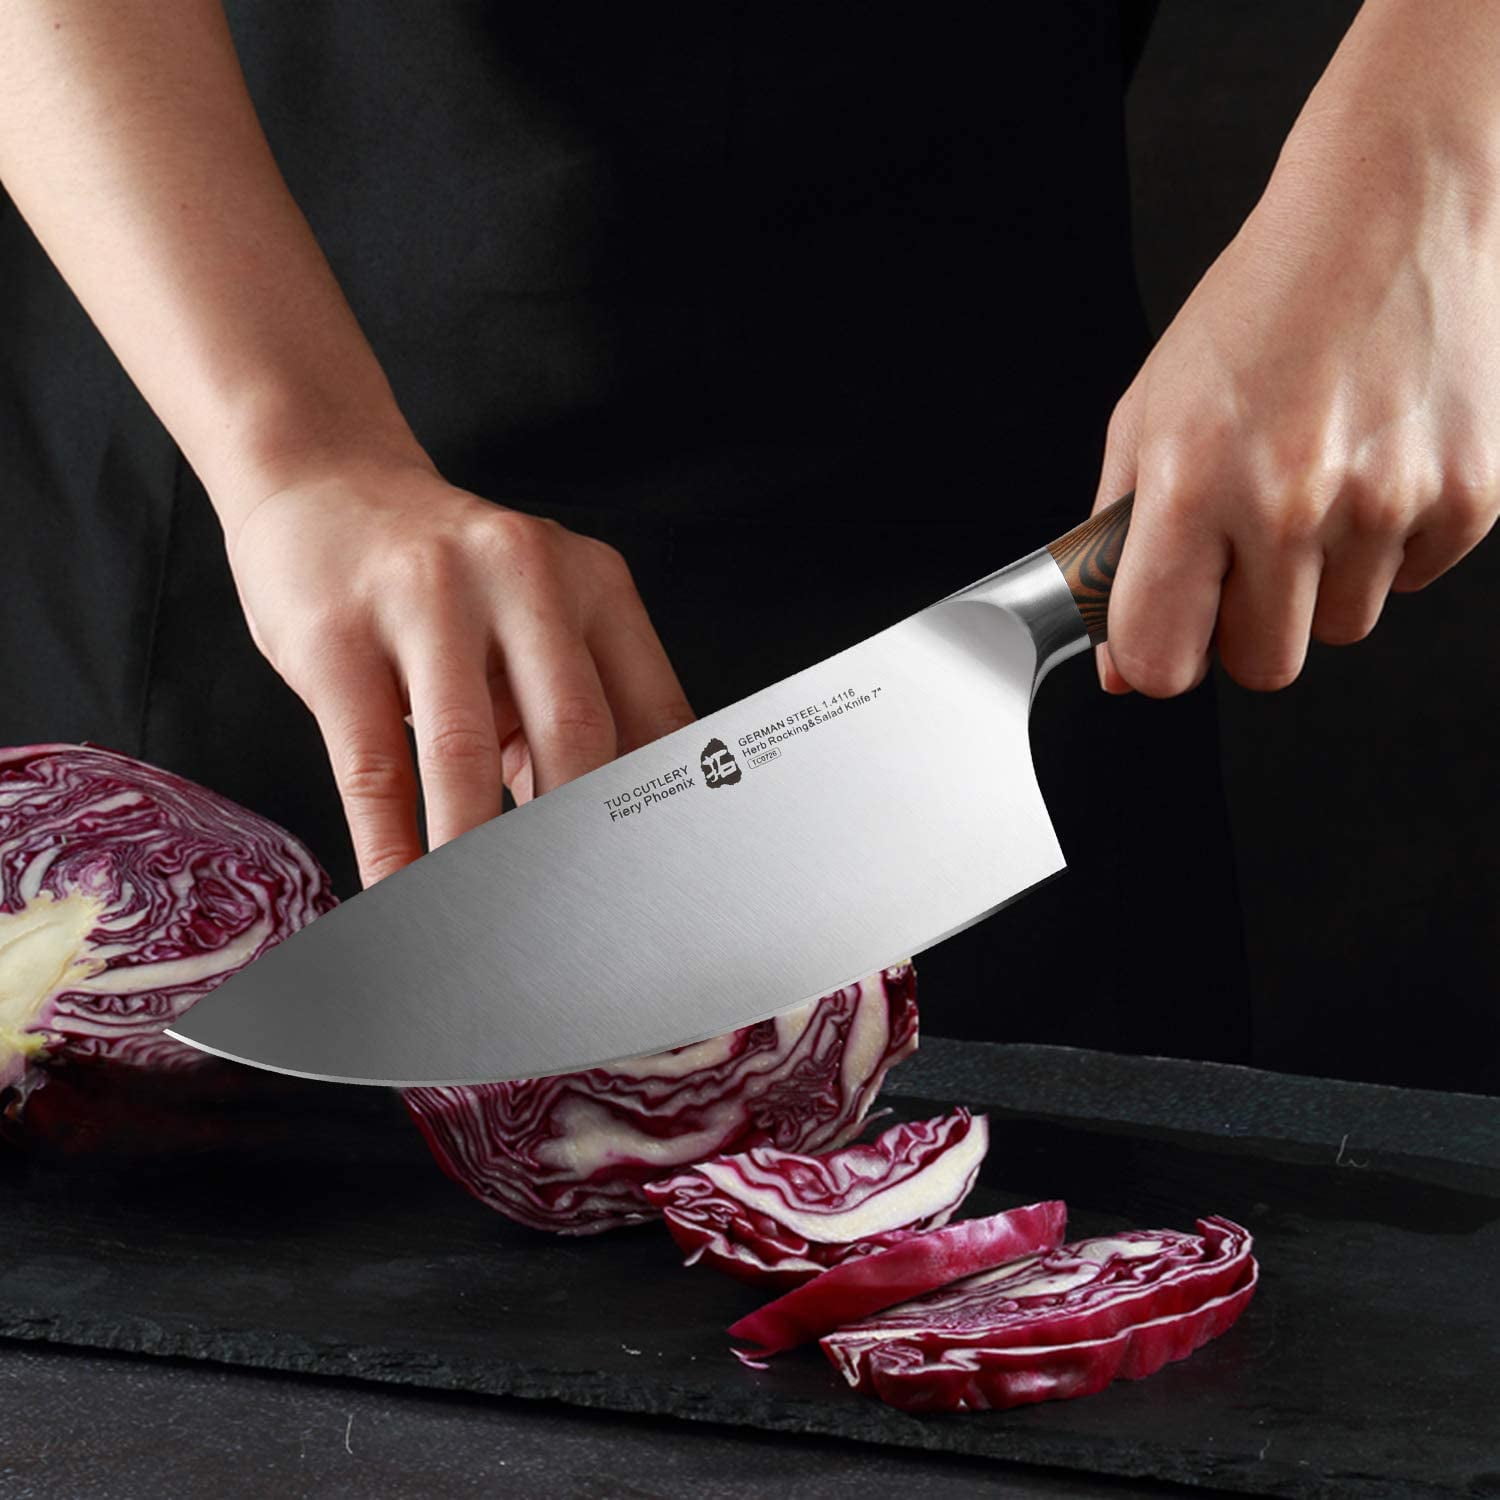 Cleaver Knife Set Kitchen Green Handle – Knife Depot Co.